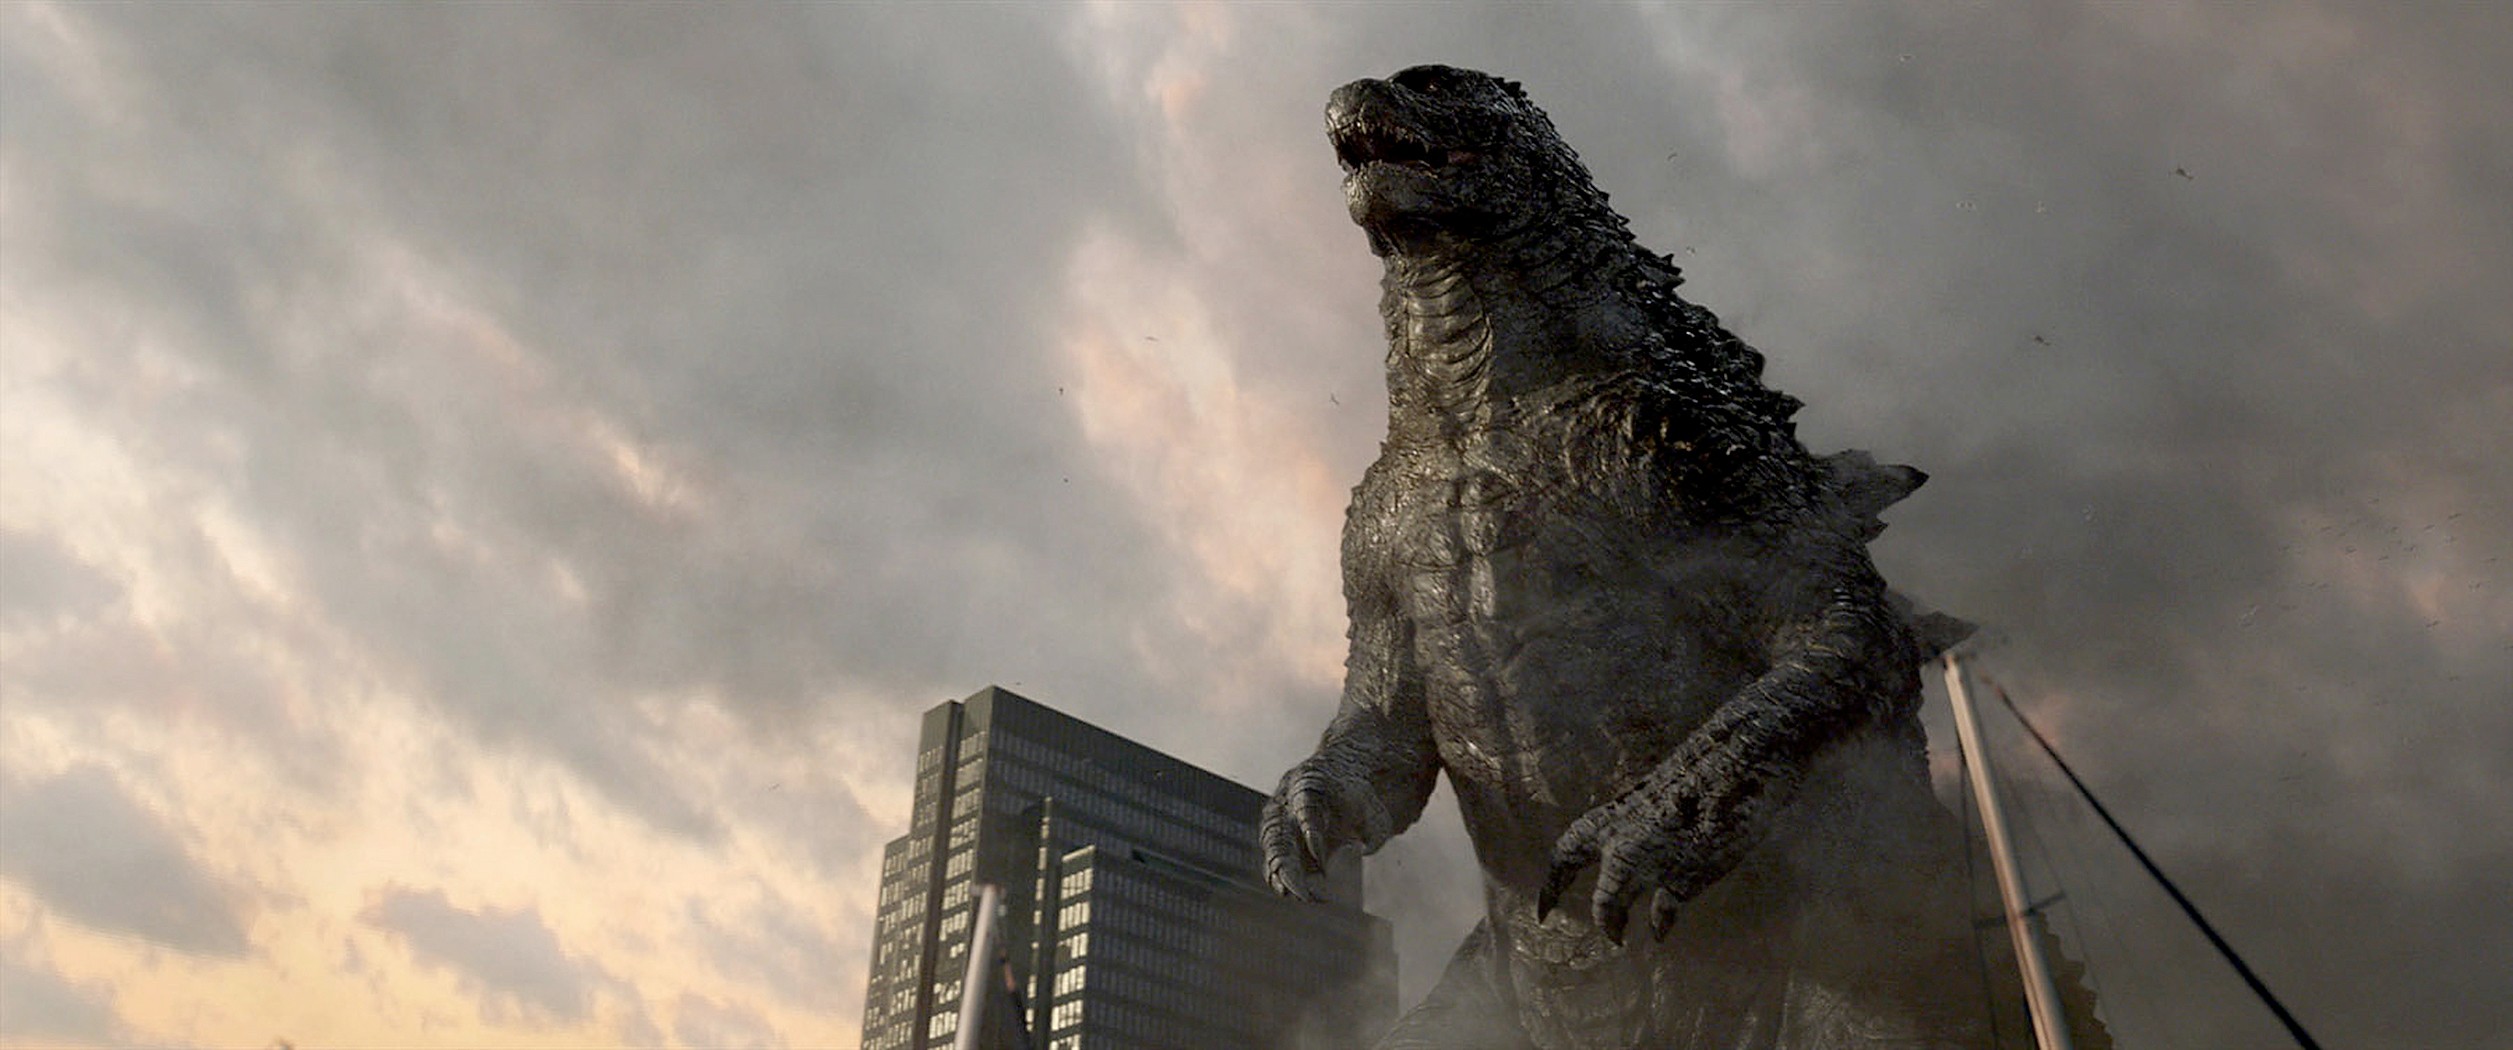 New Godzilla Movie Still